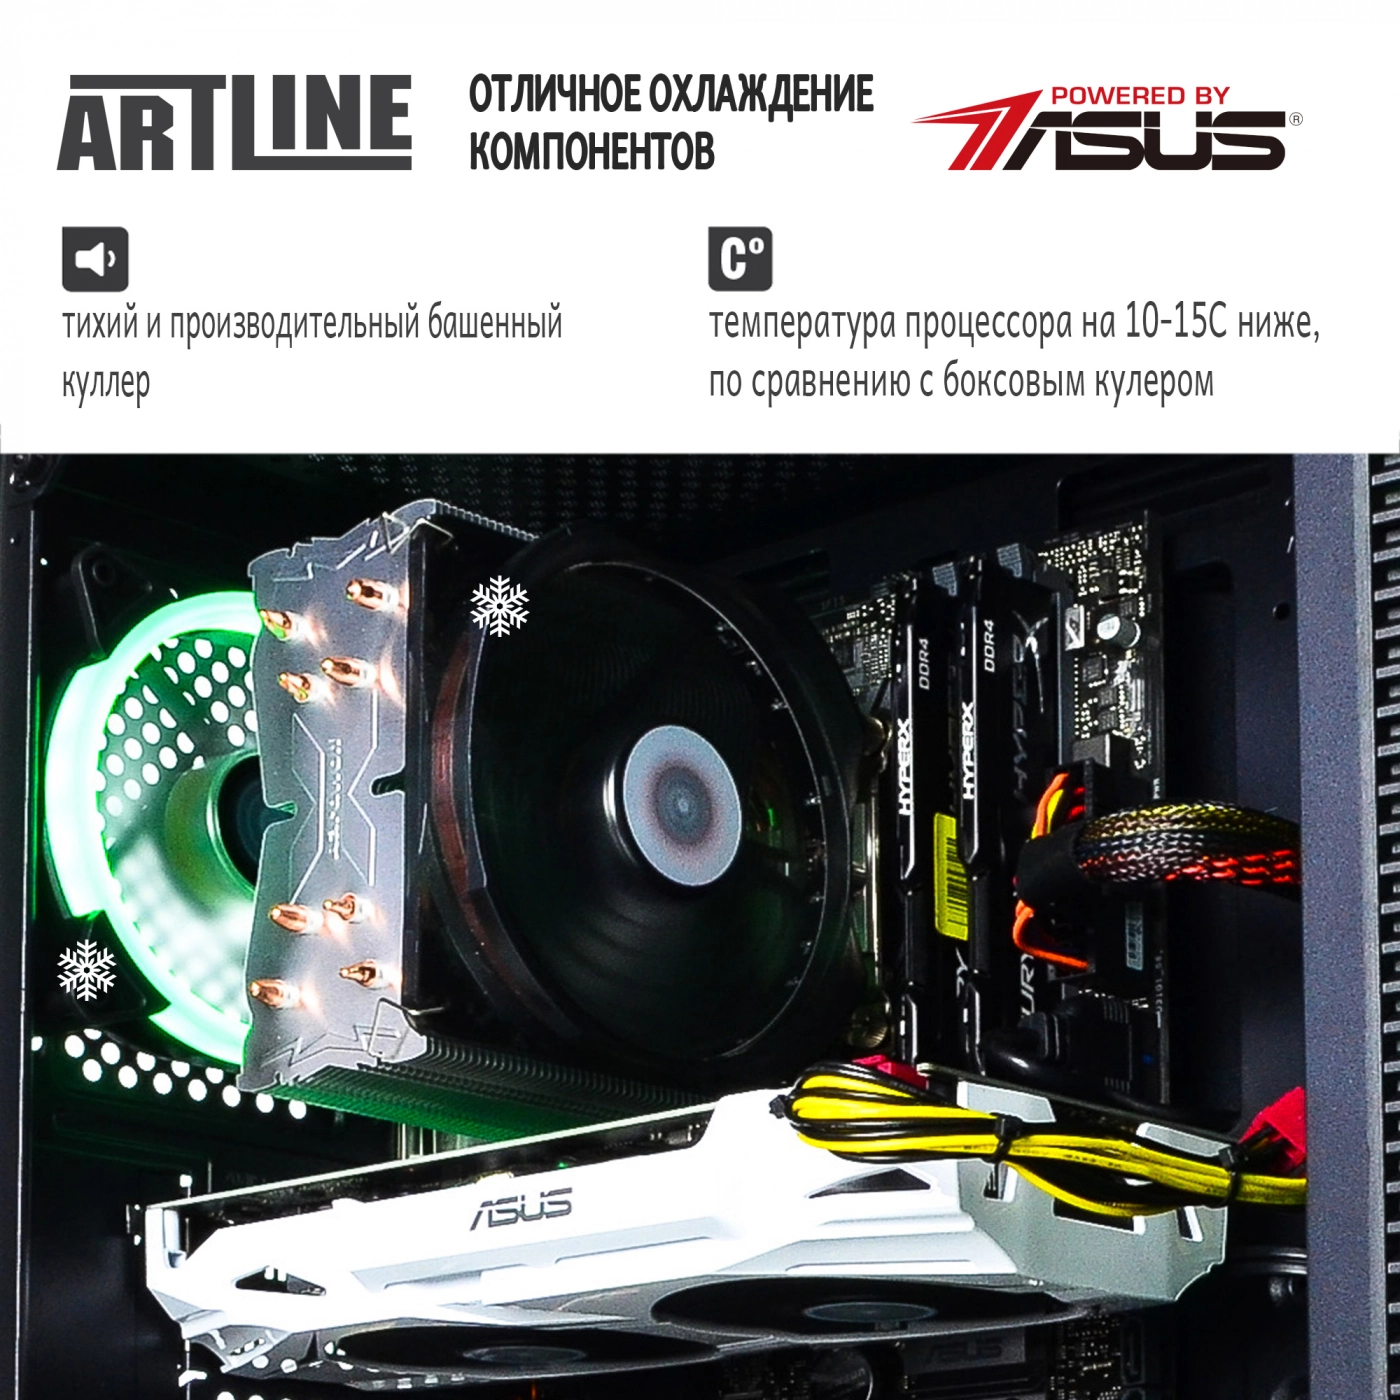 Купить Компьютер ARTLINE Gaming X77v35 - фото 3